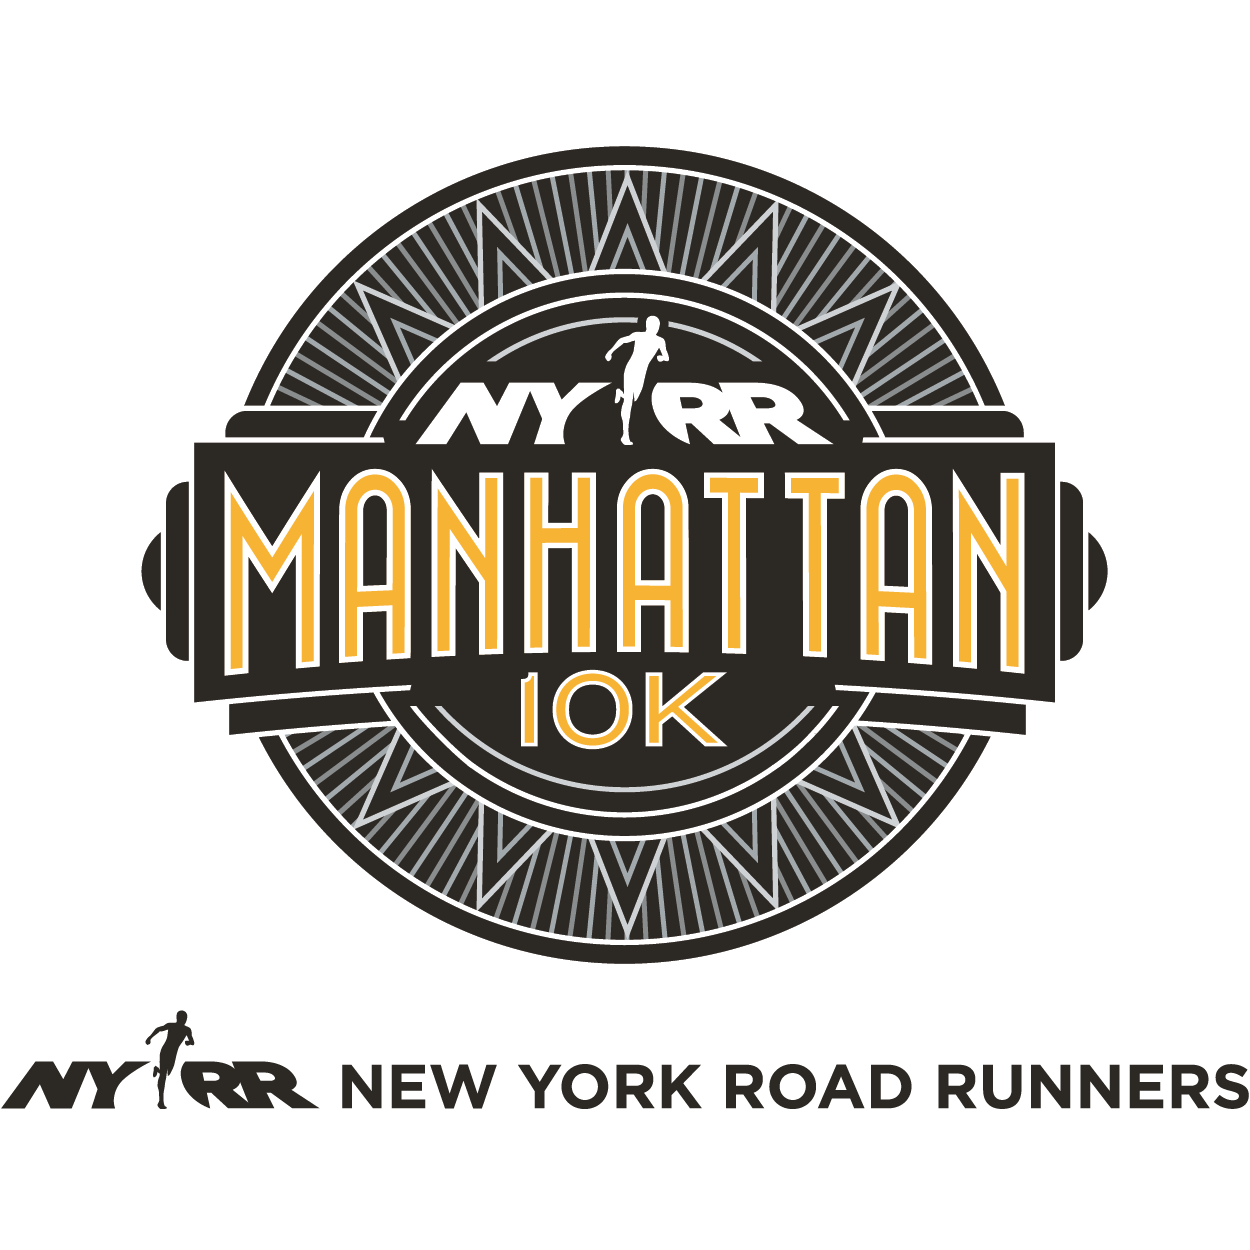 NYRR Manhattan 10K logo on RaceRaves